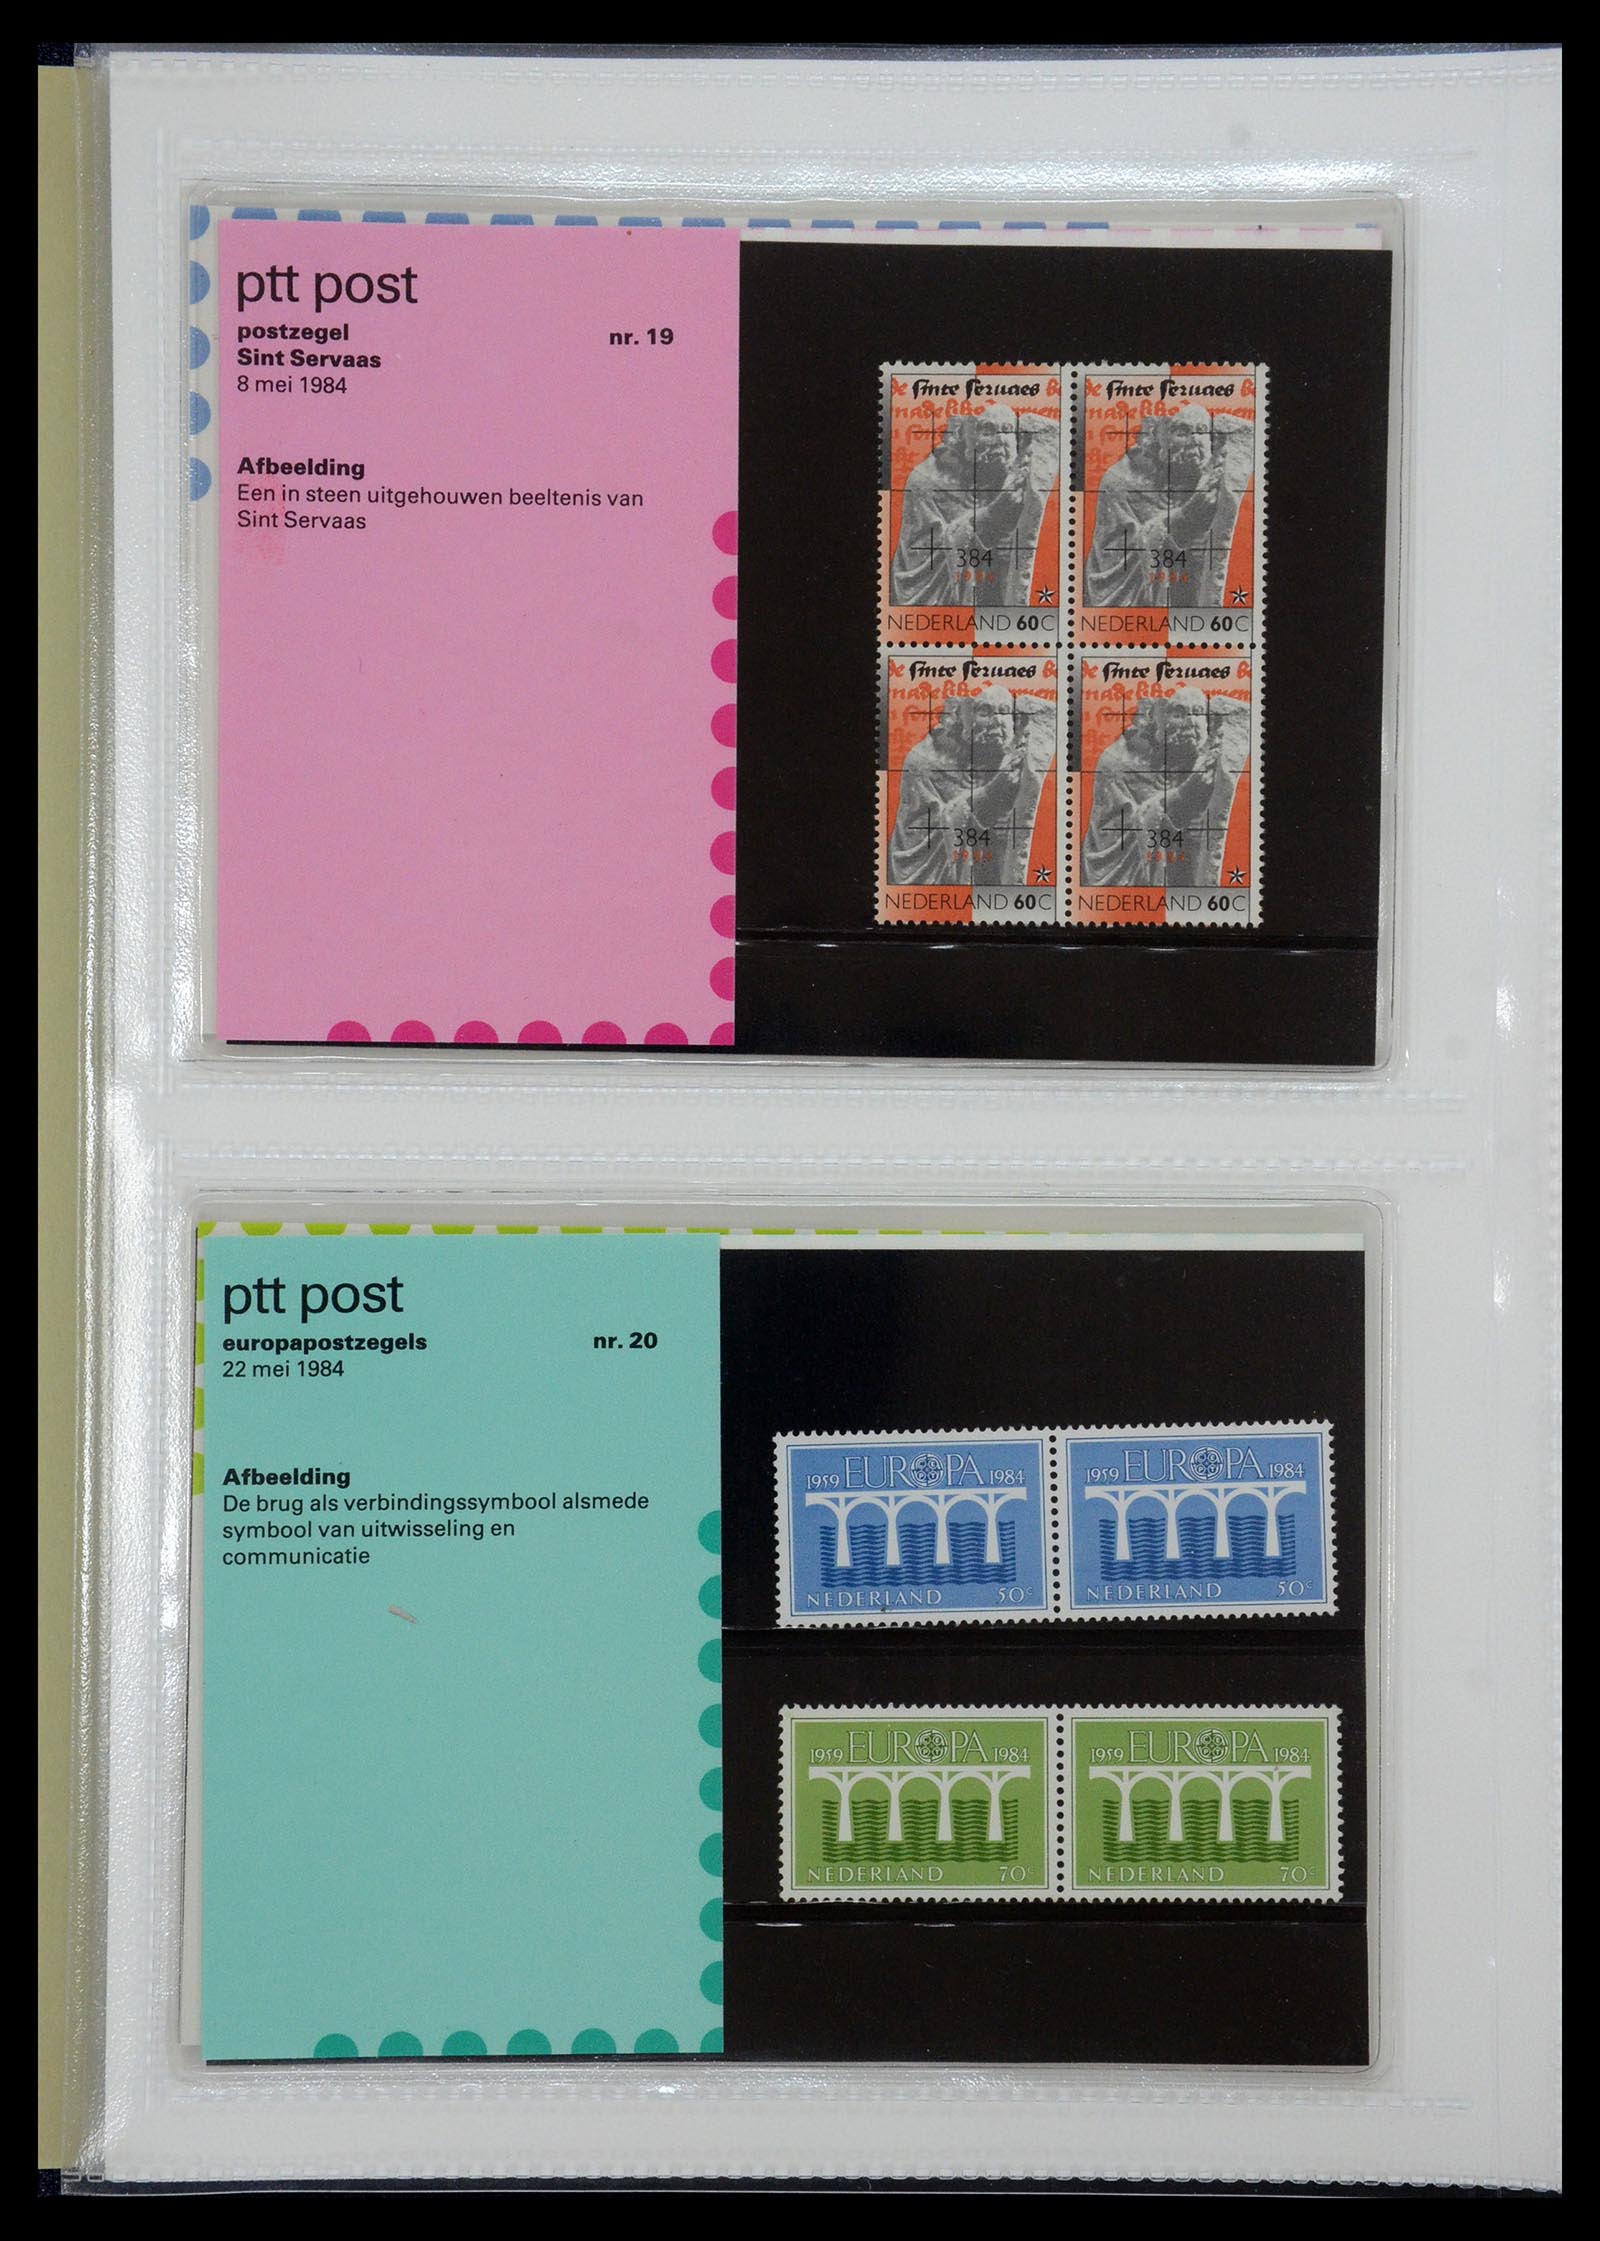 35144 010 - Stamp Collection 35144 Netherlands PTT presentation packs 1982-2021!